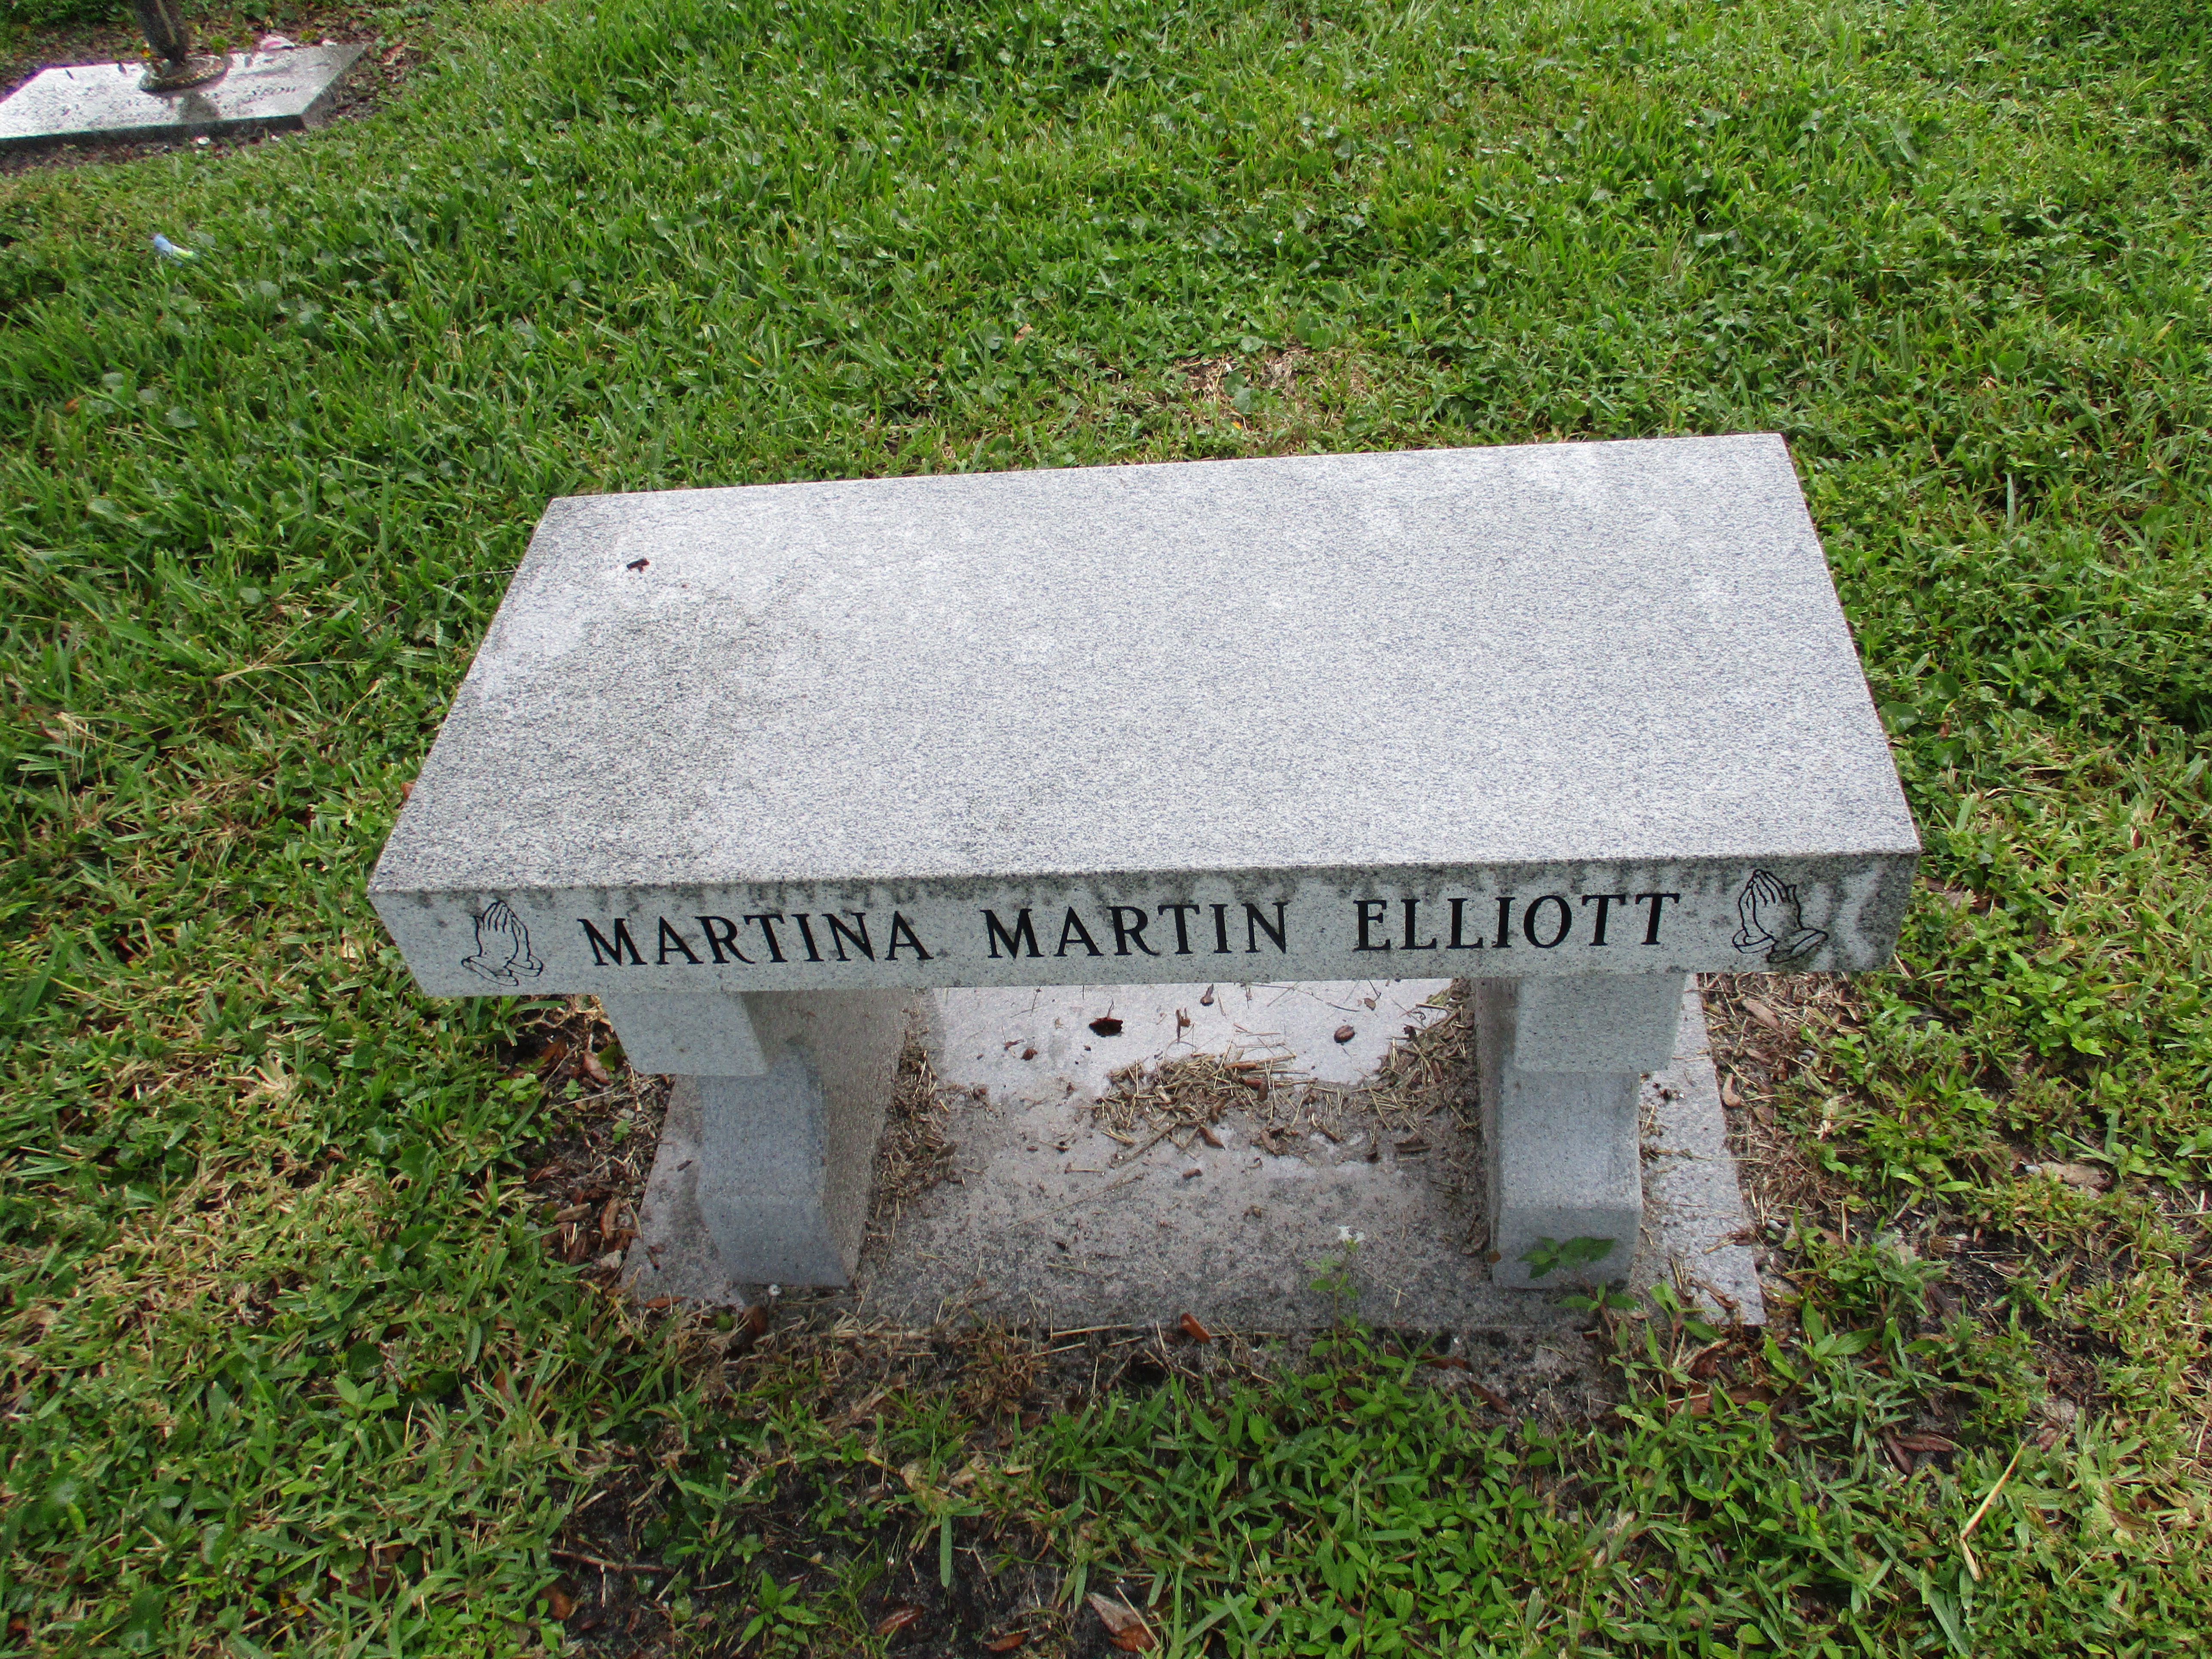 Martina Martin Elliott